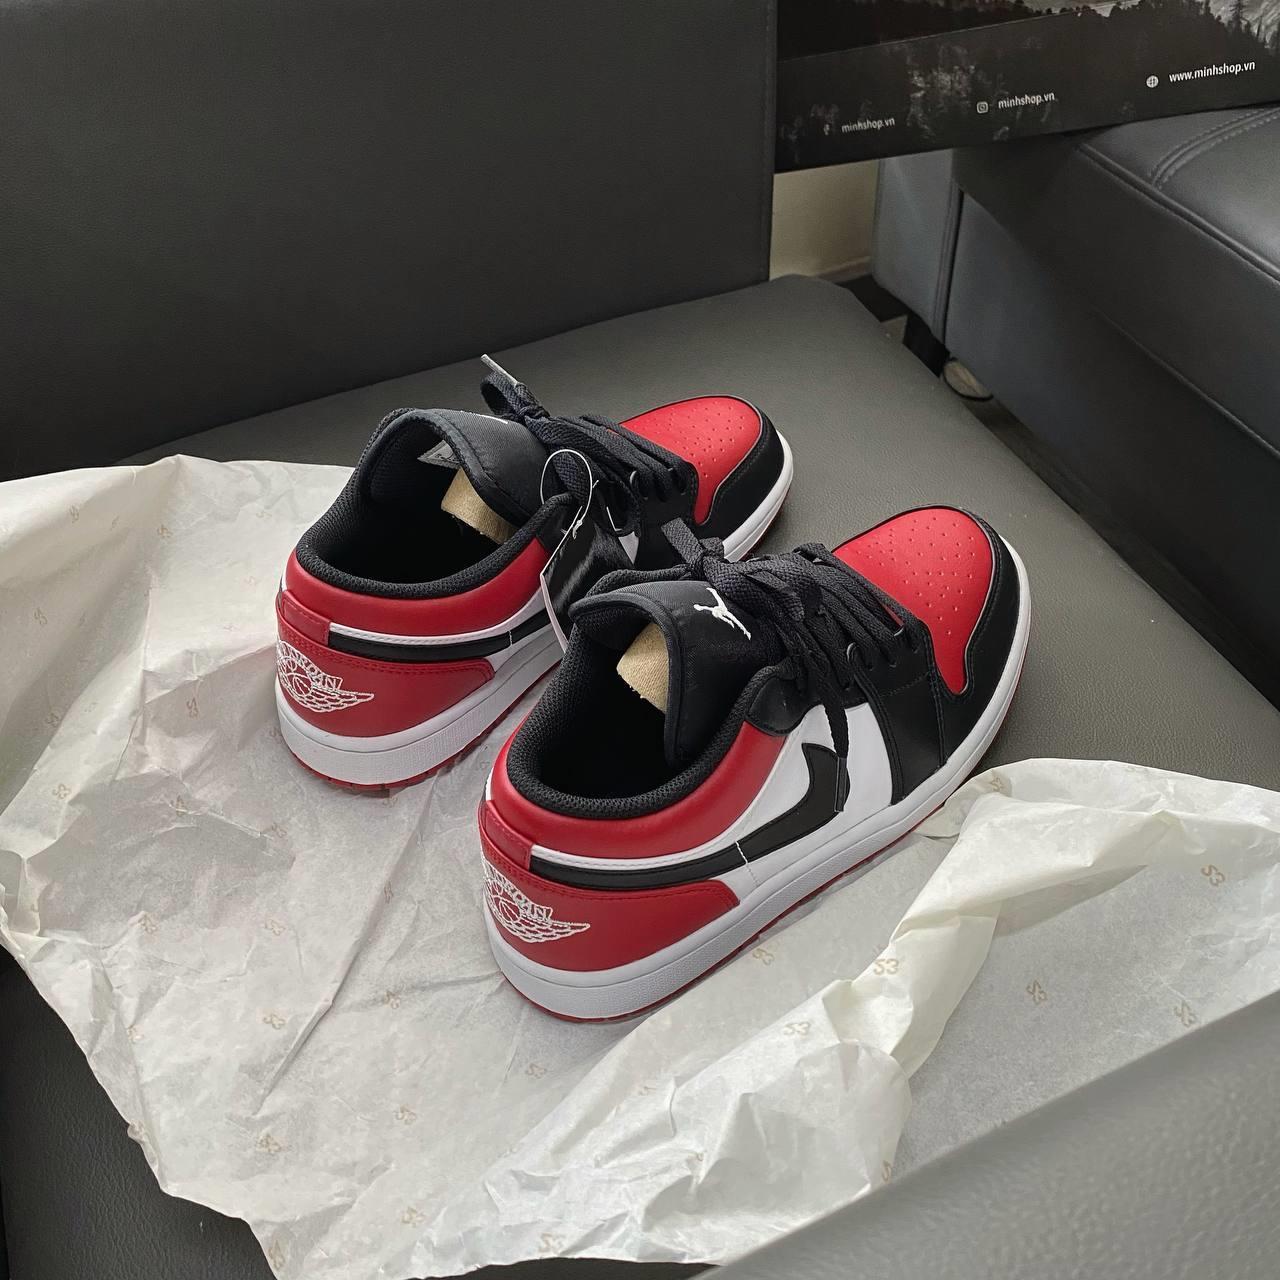 Minhshop.vn - CHOICE Giày Nike Air Jordan 1 Low 'Bred Toe' [553558